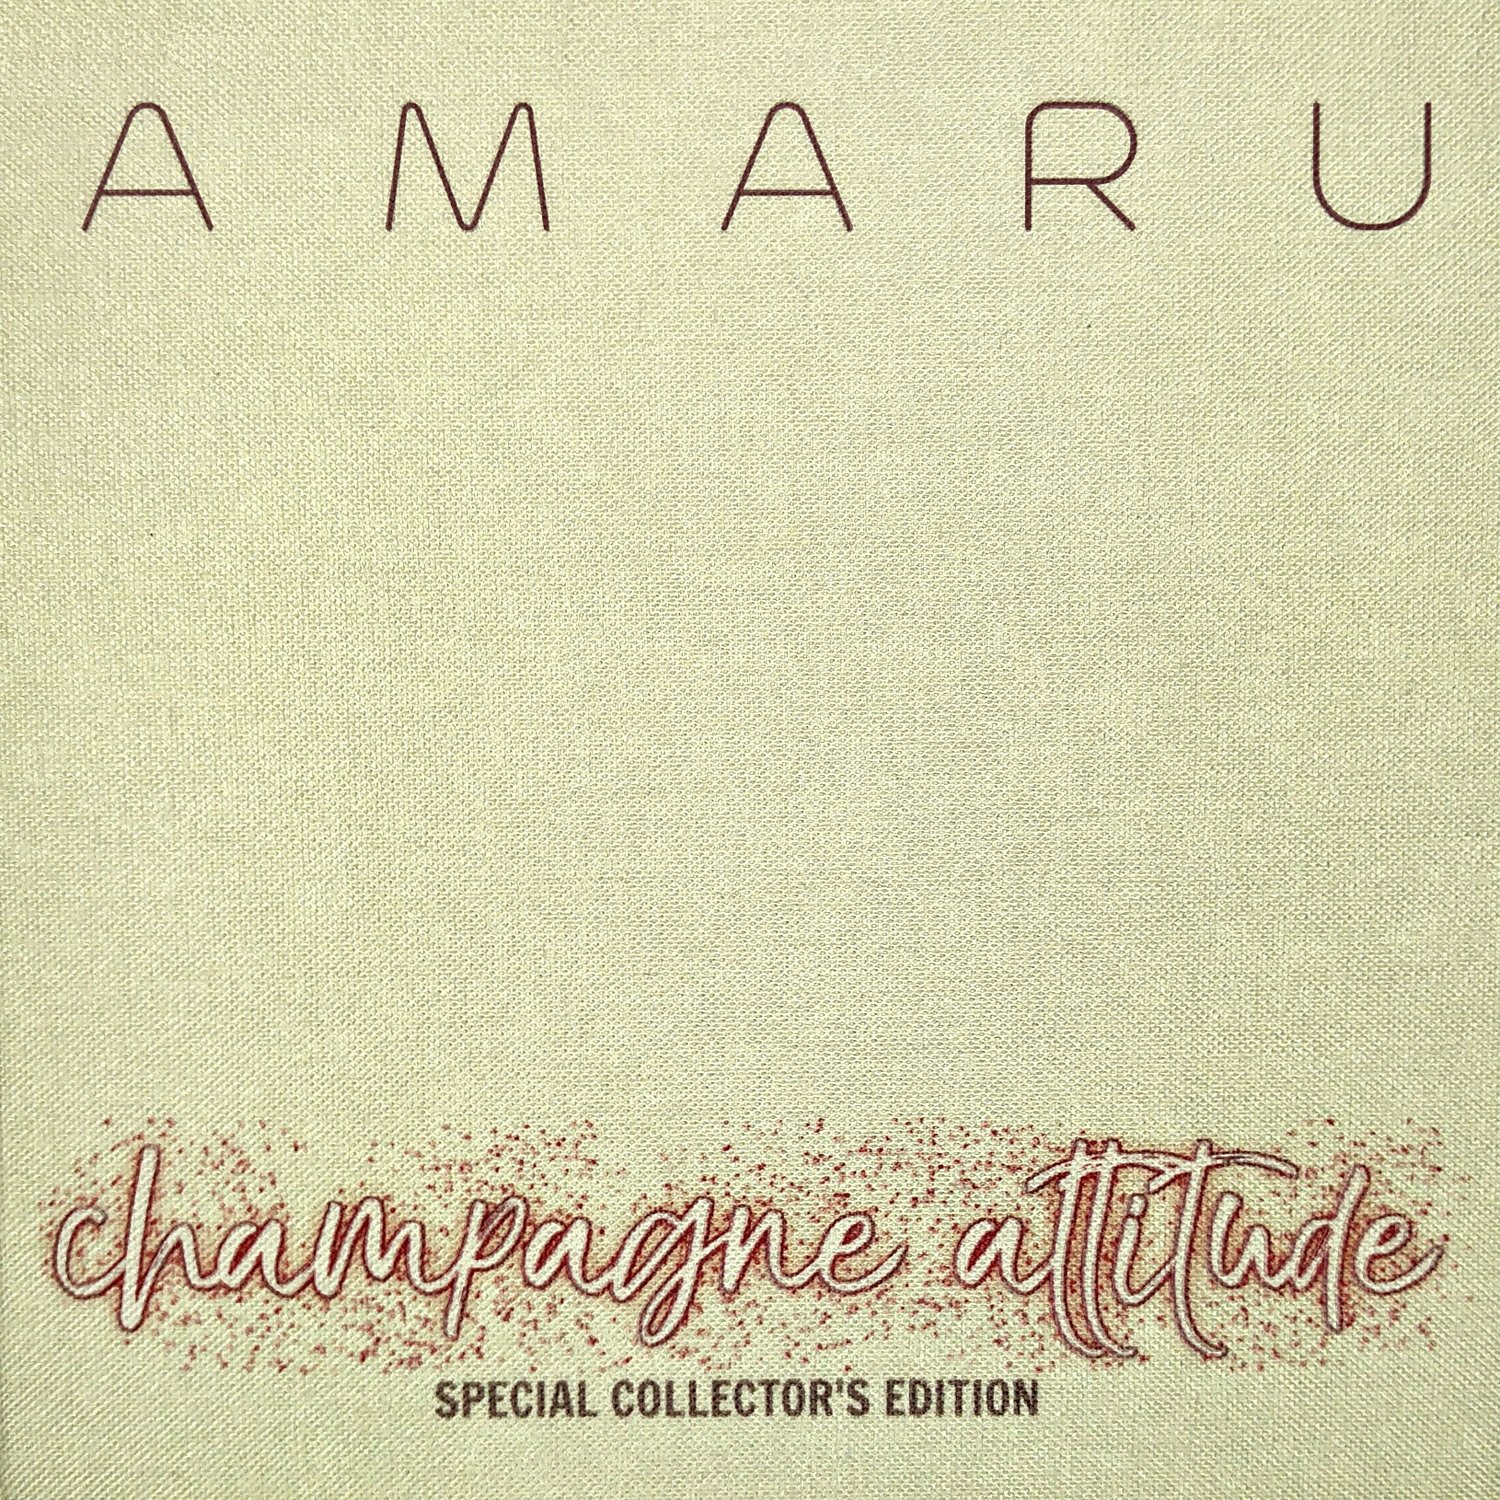 AMARU - CHAMPAGNE ATTITUDE (SPECIAL COLLECTOR'S EDITION)